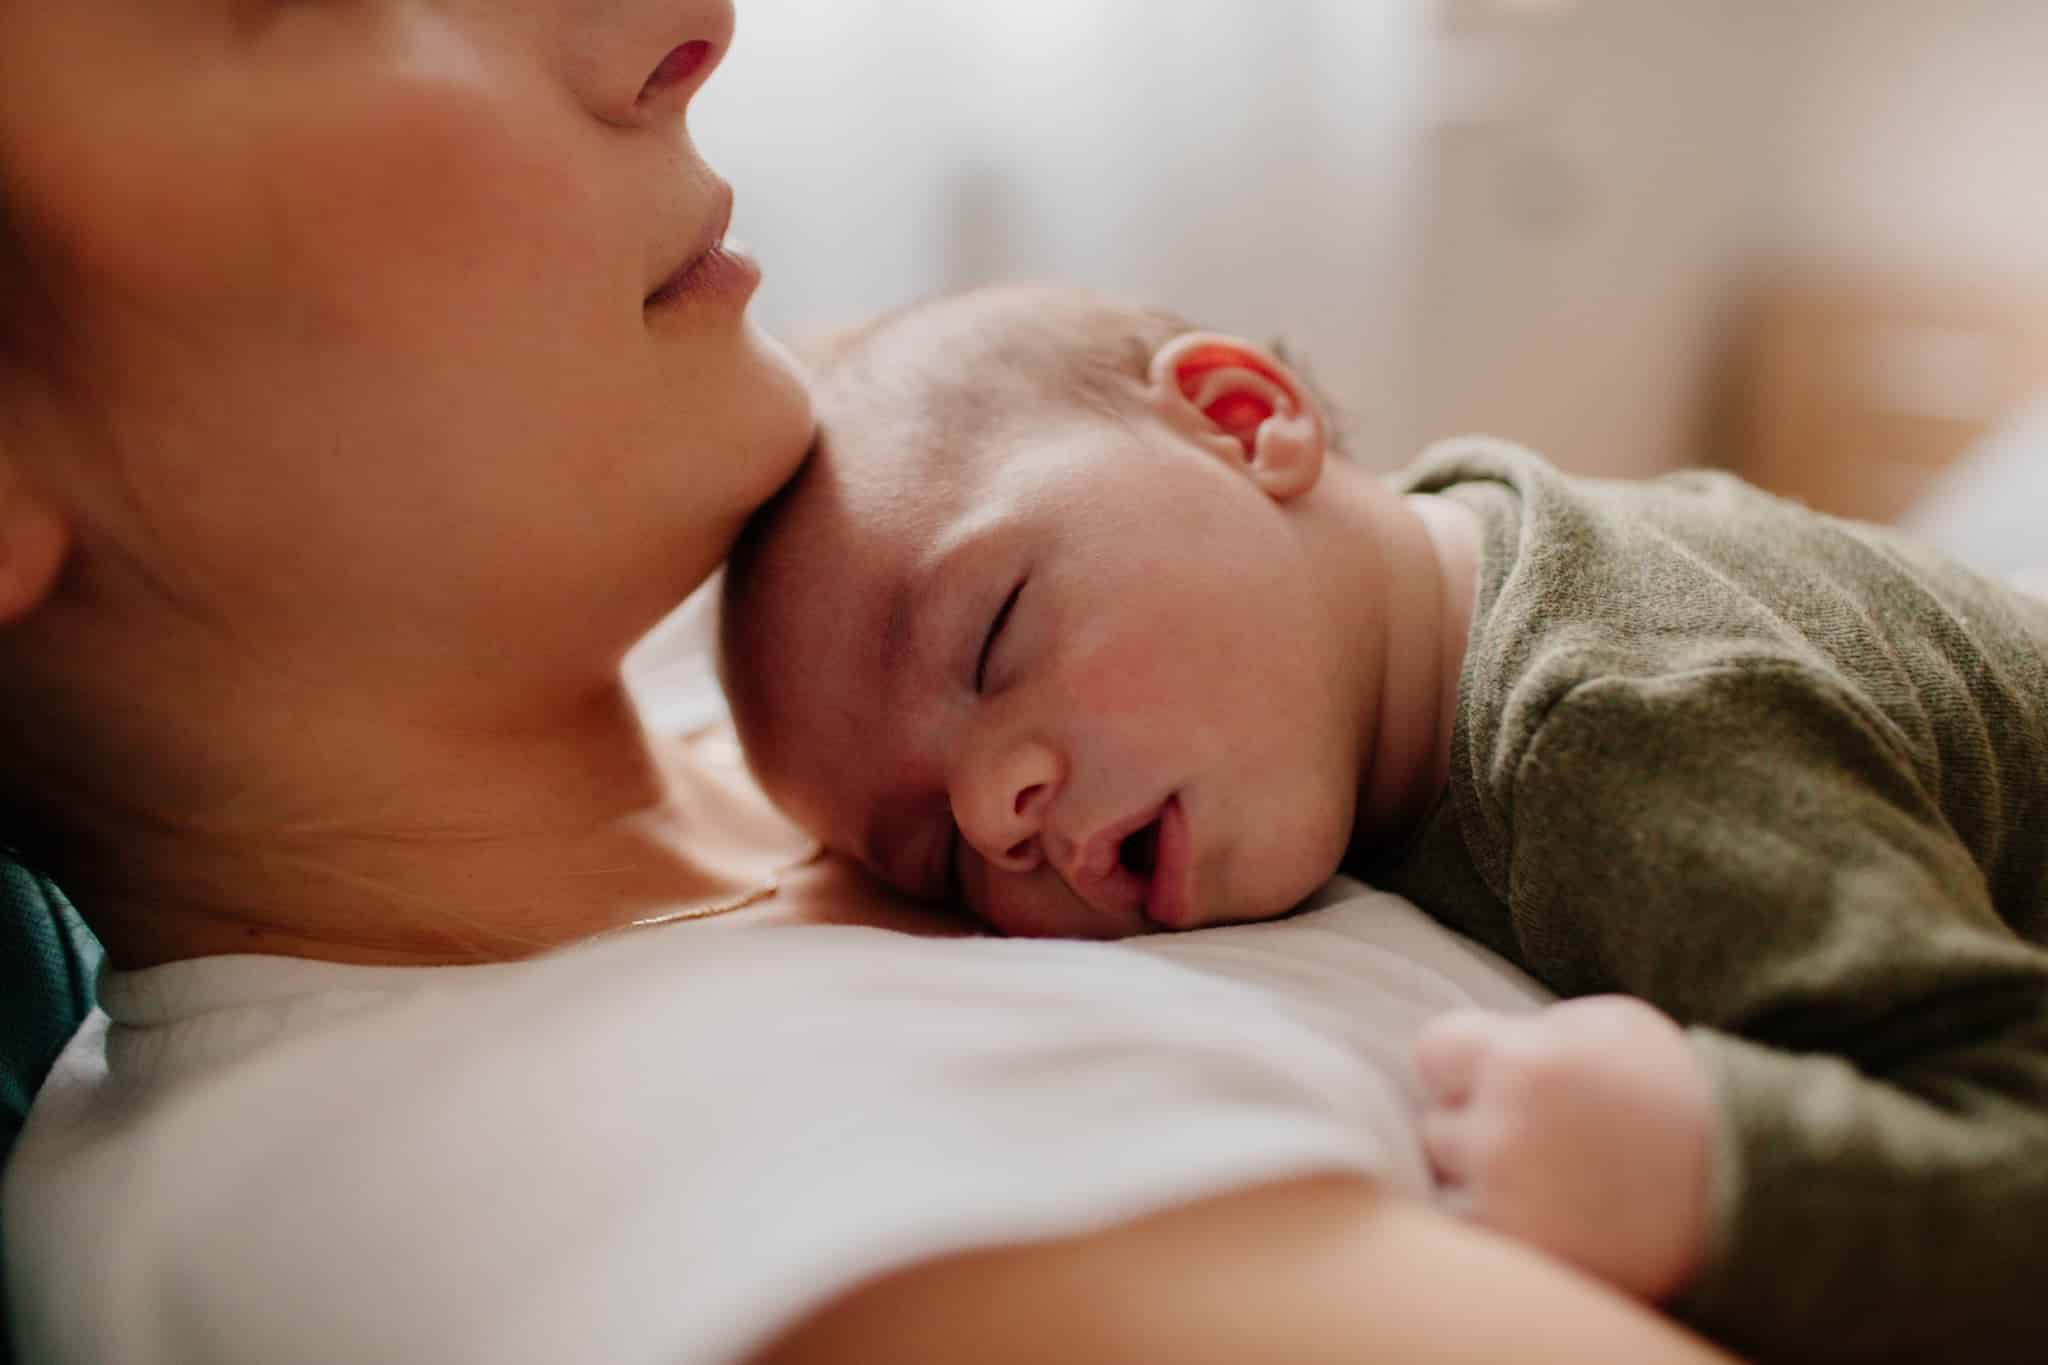 Primul an de maternitate: 10 lucruri care ti se vor intampla